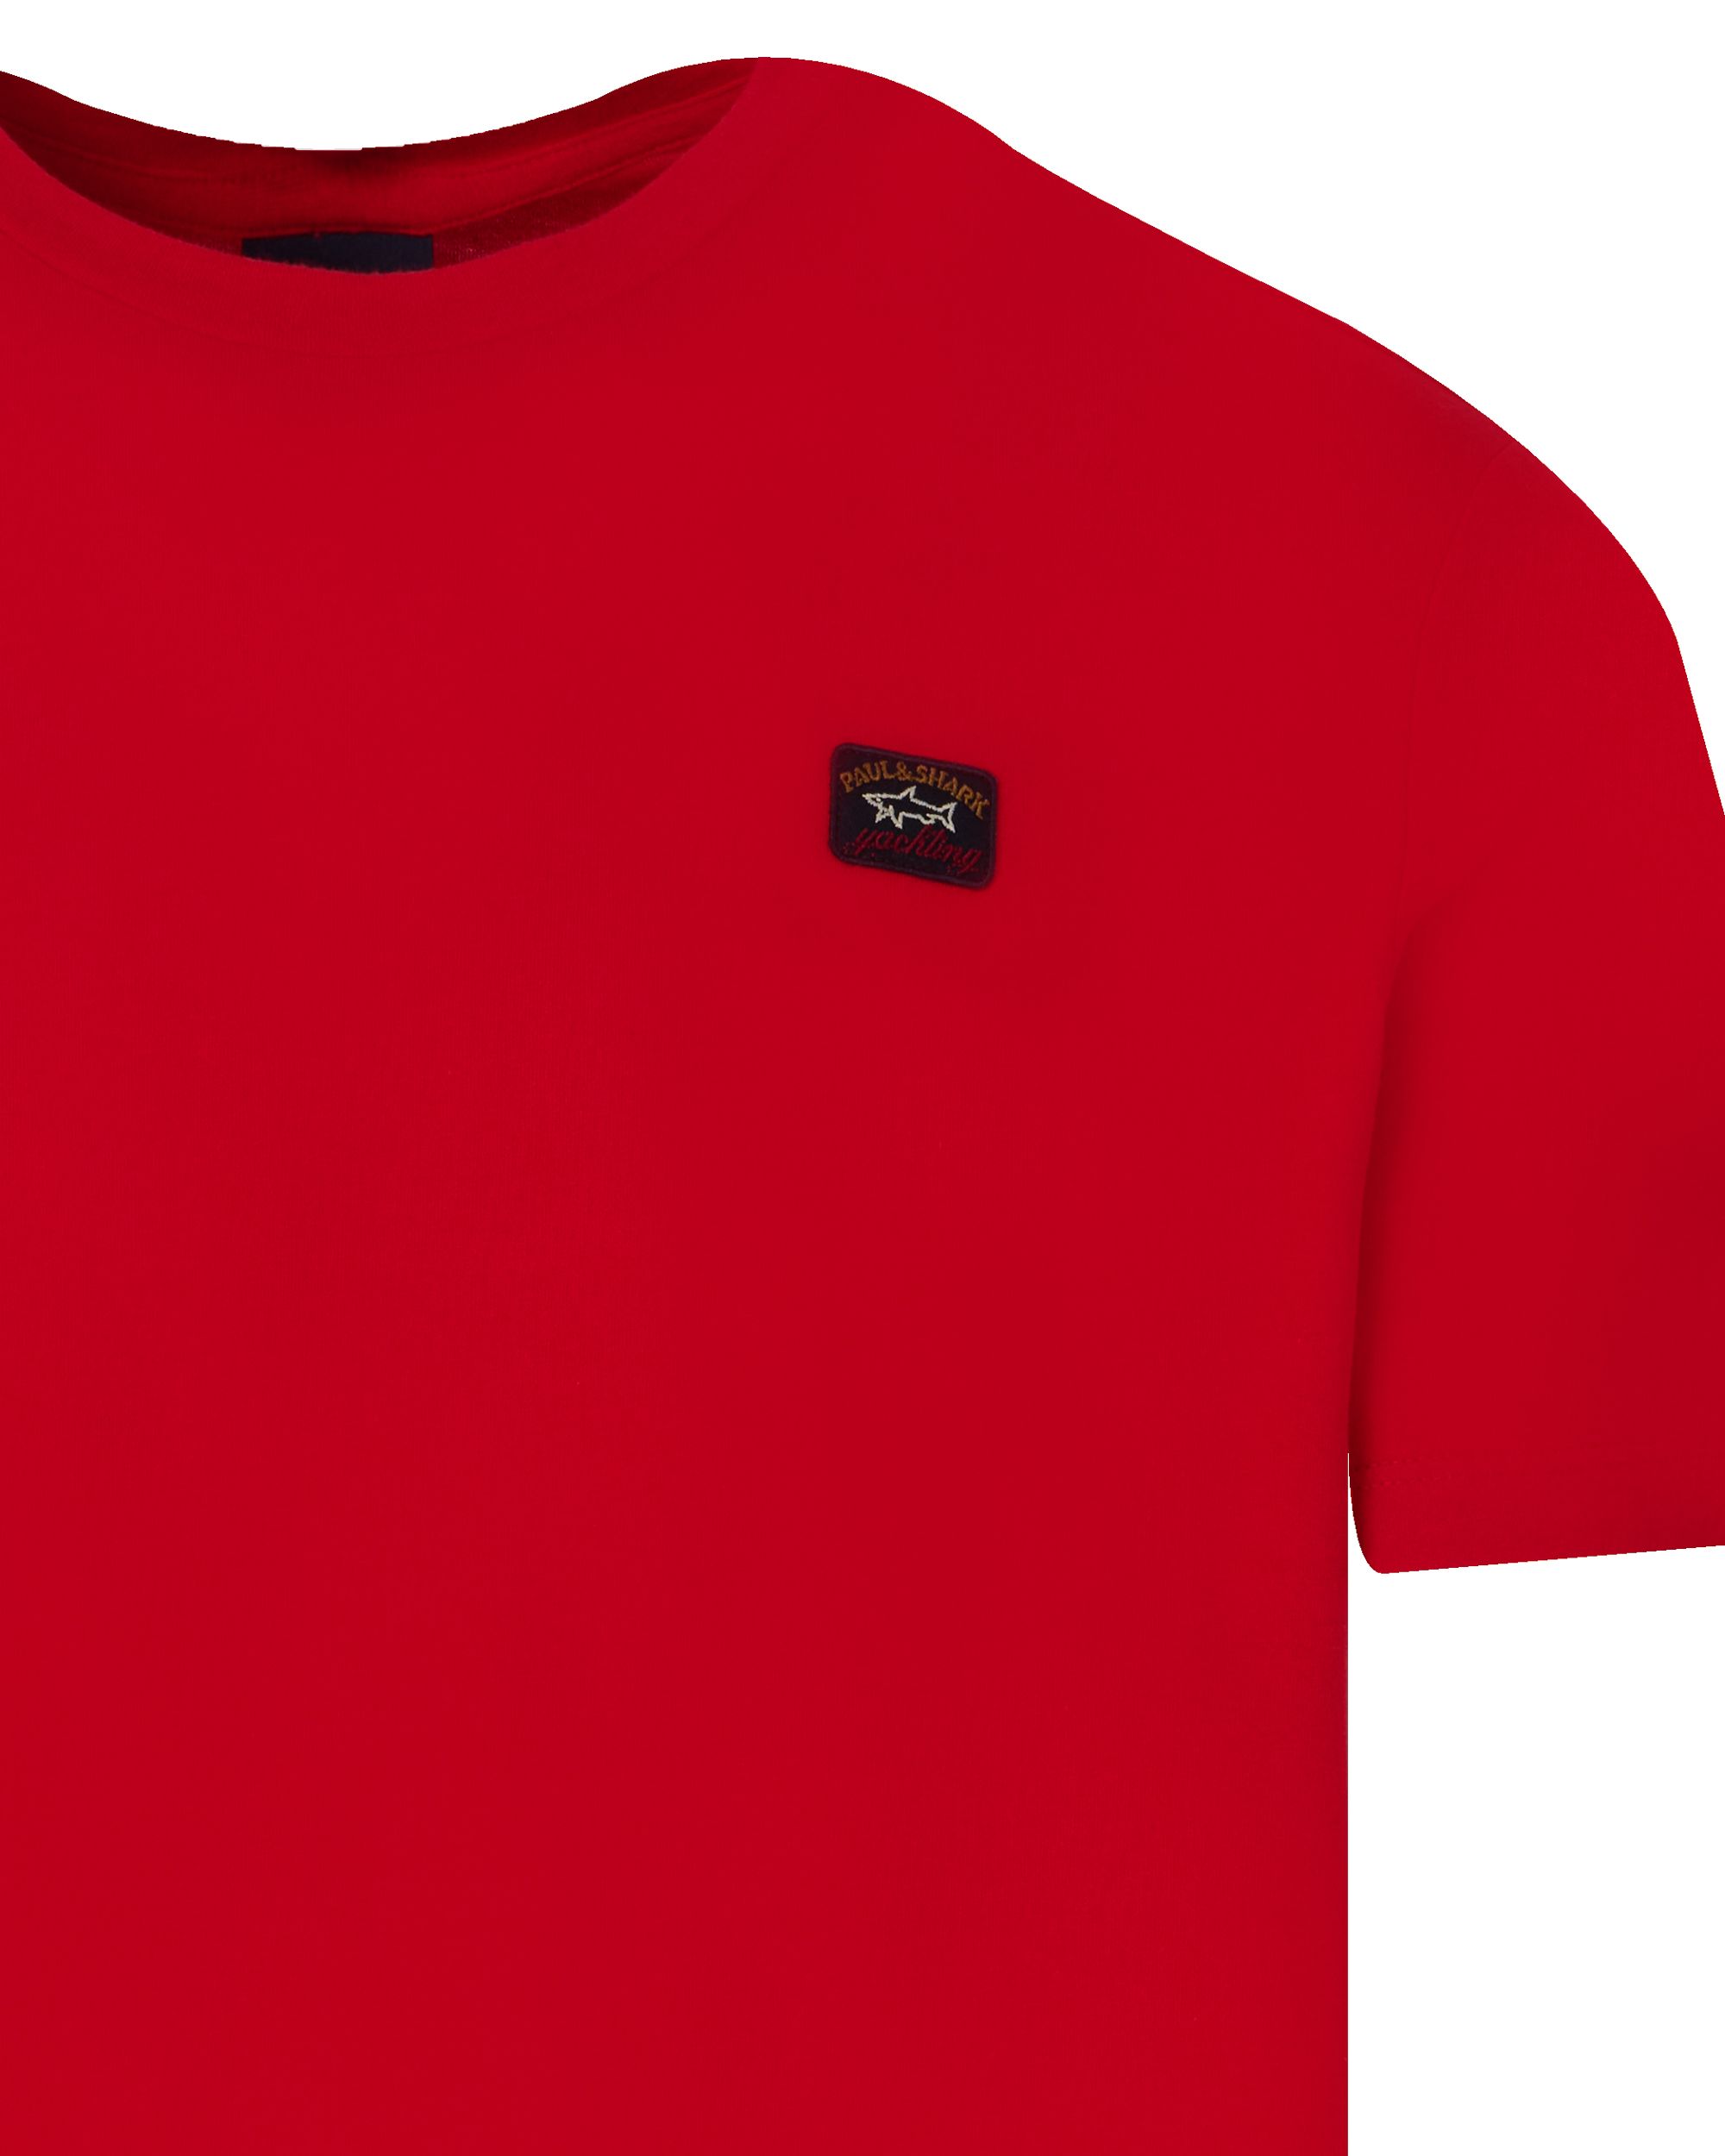 Paul & Shark T-shirt KM Rood 091222-001-4XL